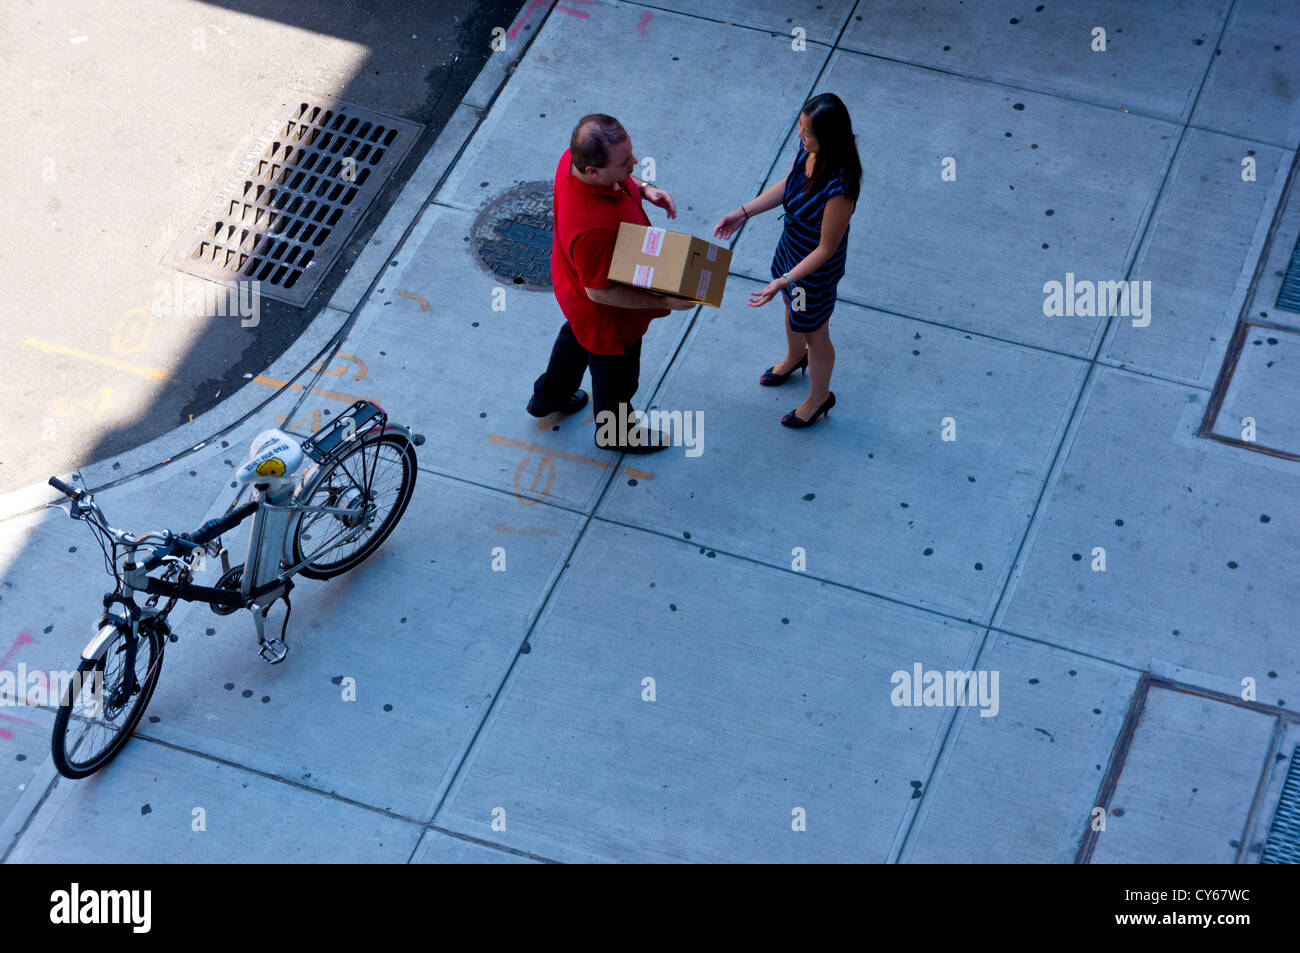 Ein Kurier liefert eine Paket - eine alltägliche New Yorker Straßenszene aus der High Line Stadtpark, Manhattan, New York betrachtet. Stockfoto